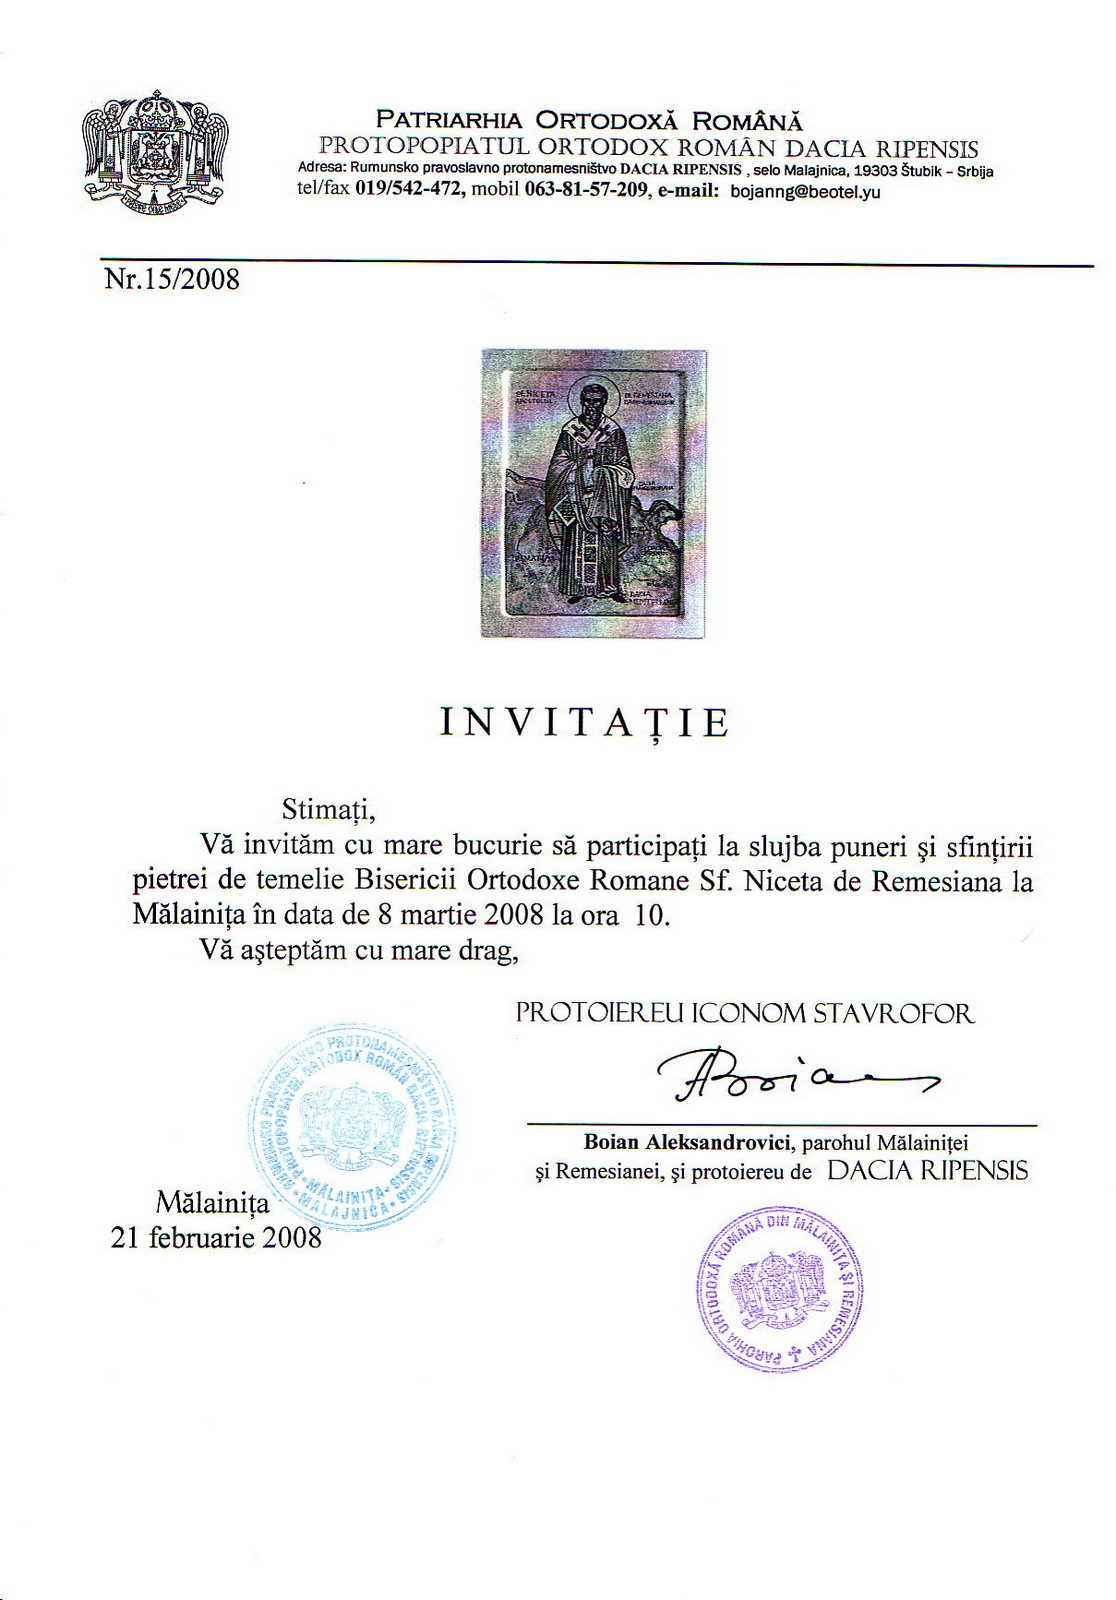 [Invitatie+la+Malainita+pt+8.03.2008.jpg]